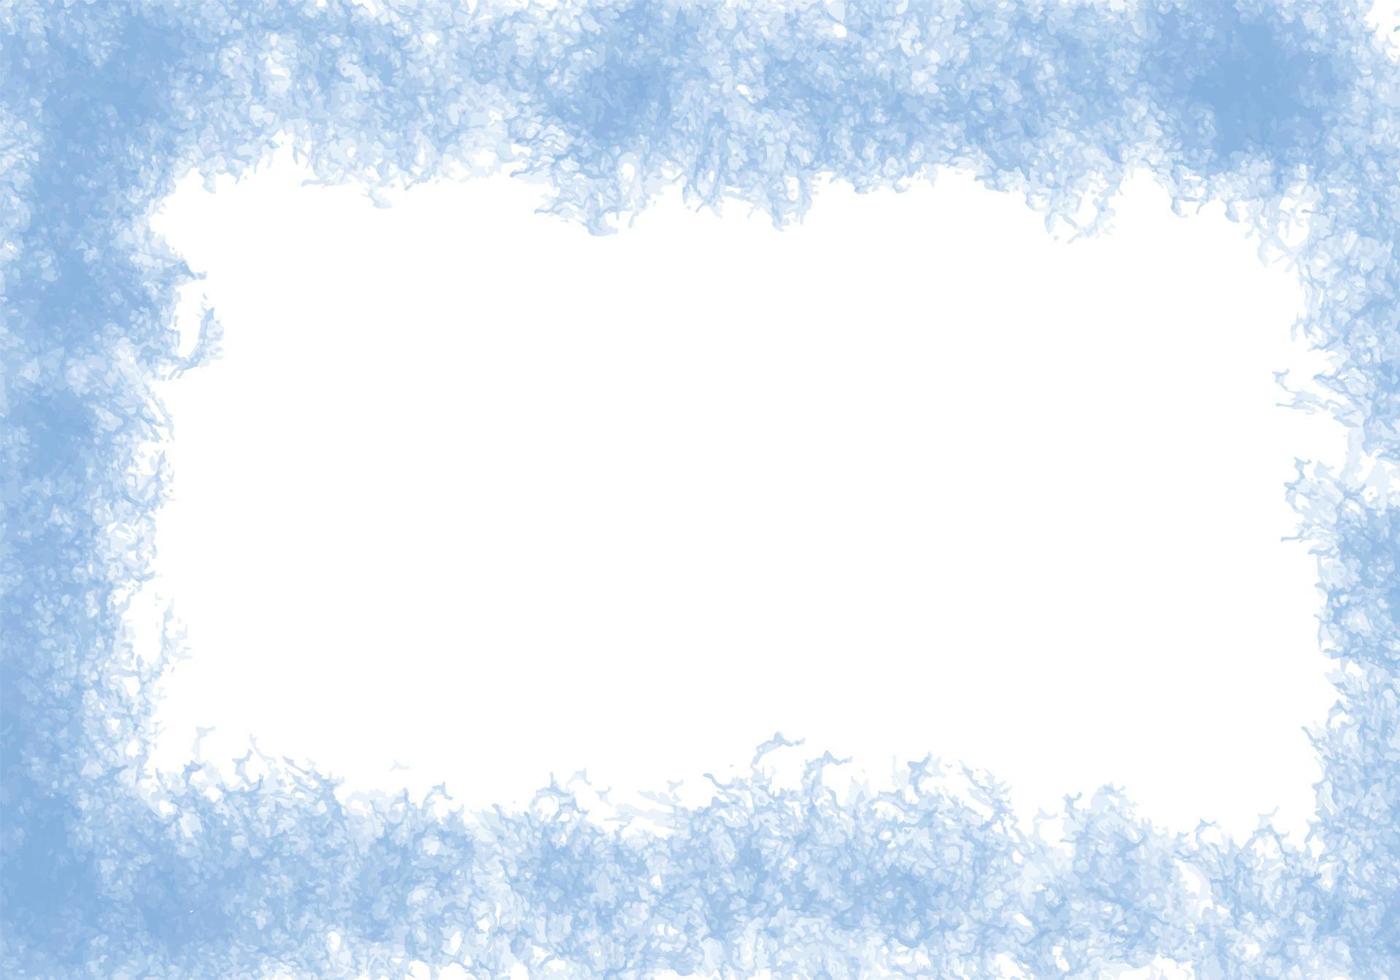 escovado aquarela pintada abstrata azul sobre fundo branco. fundo aquarela pastel. pintura desenhada à mão de arte digital. perfeito para convites, cartões, citações, blogs, molduras de casamento. vetor